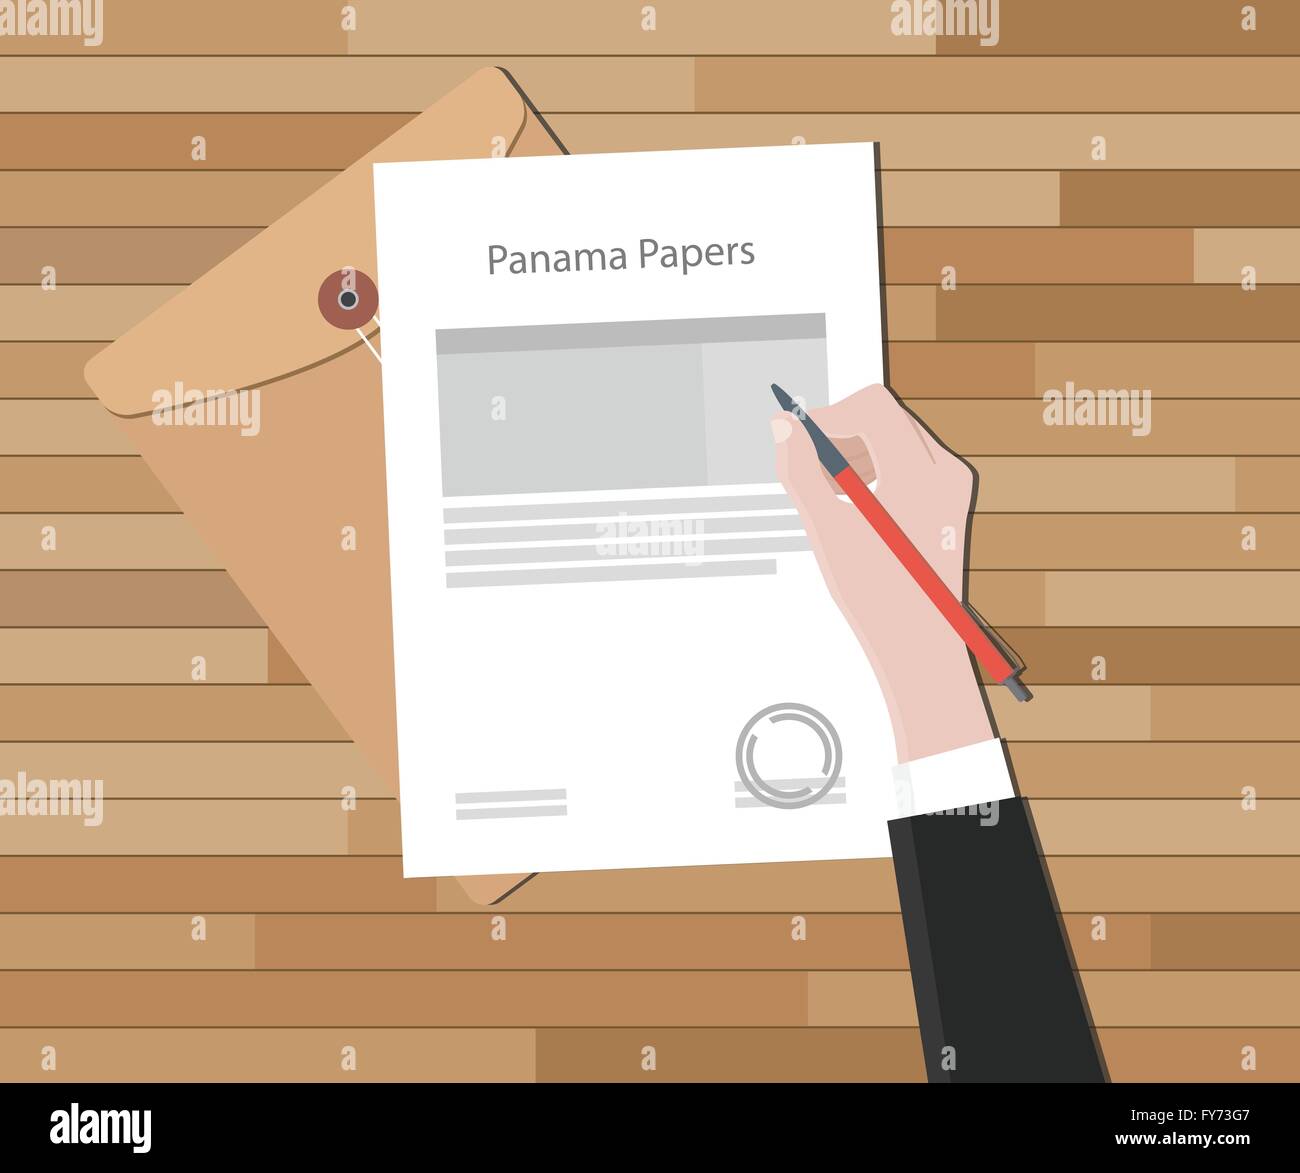 Documents document avec le Panama et du papier Illustration de Vecteur